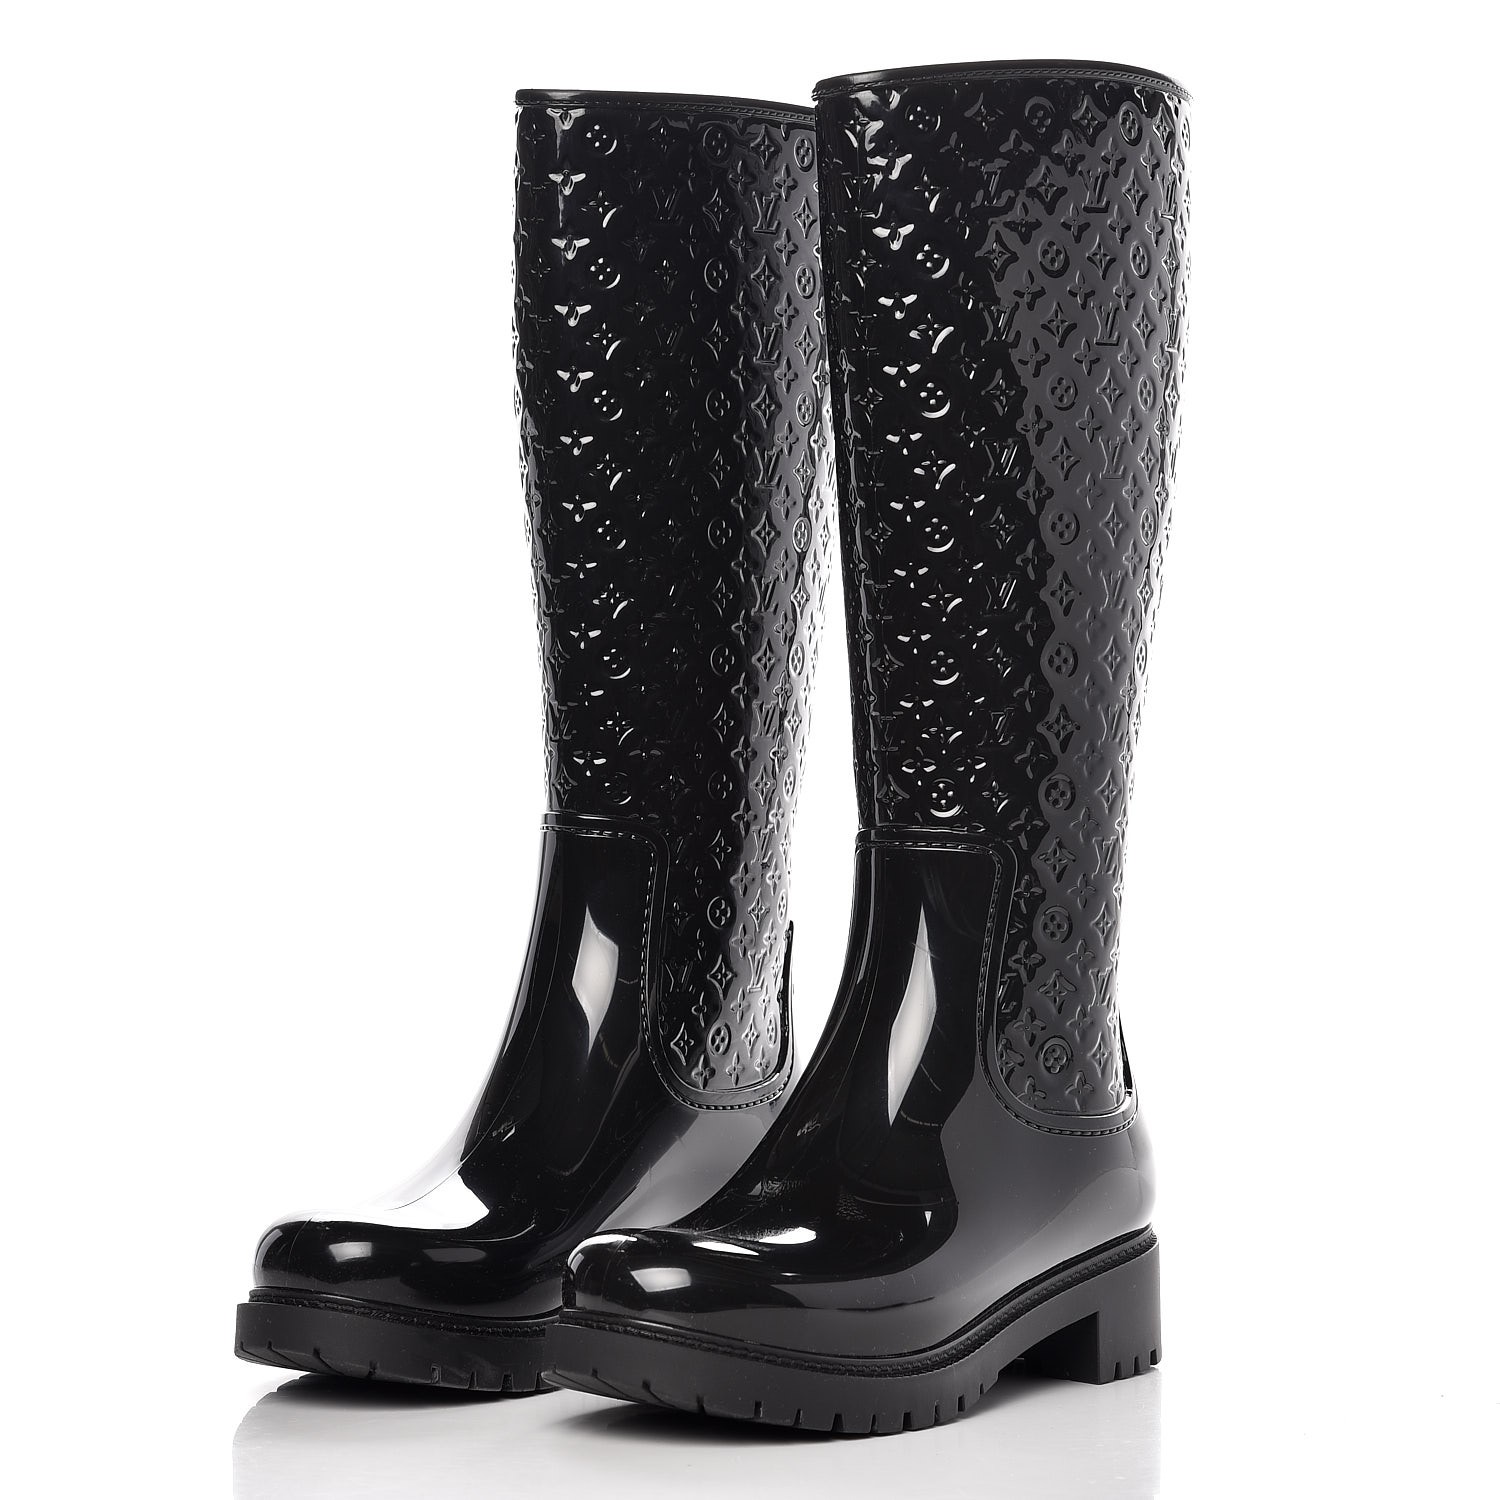 Drops wellington boots Louis Vuitton Black size 37 EU in Rubber